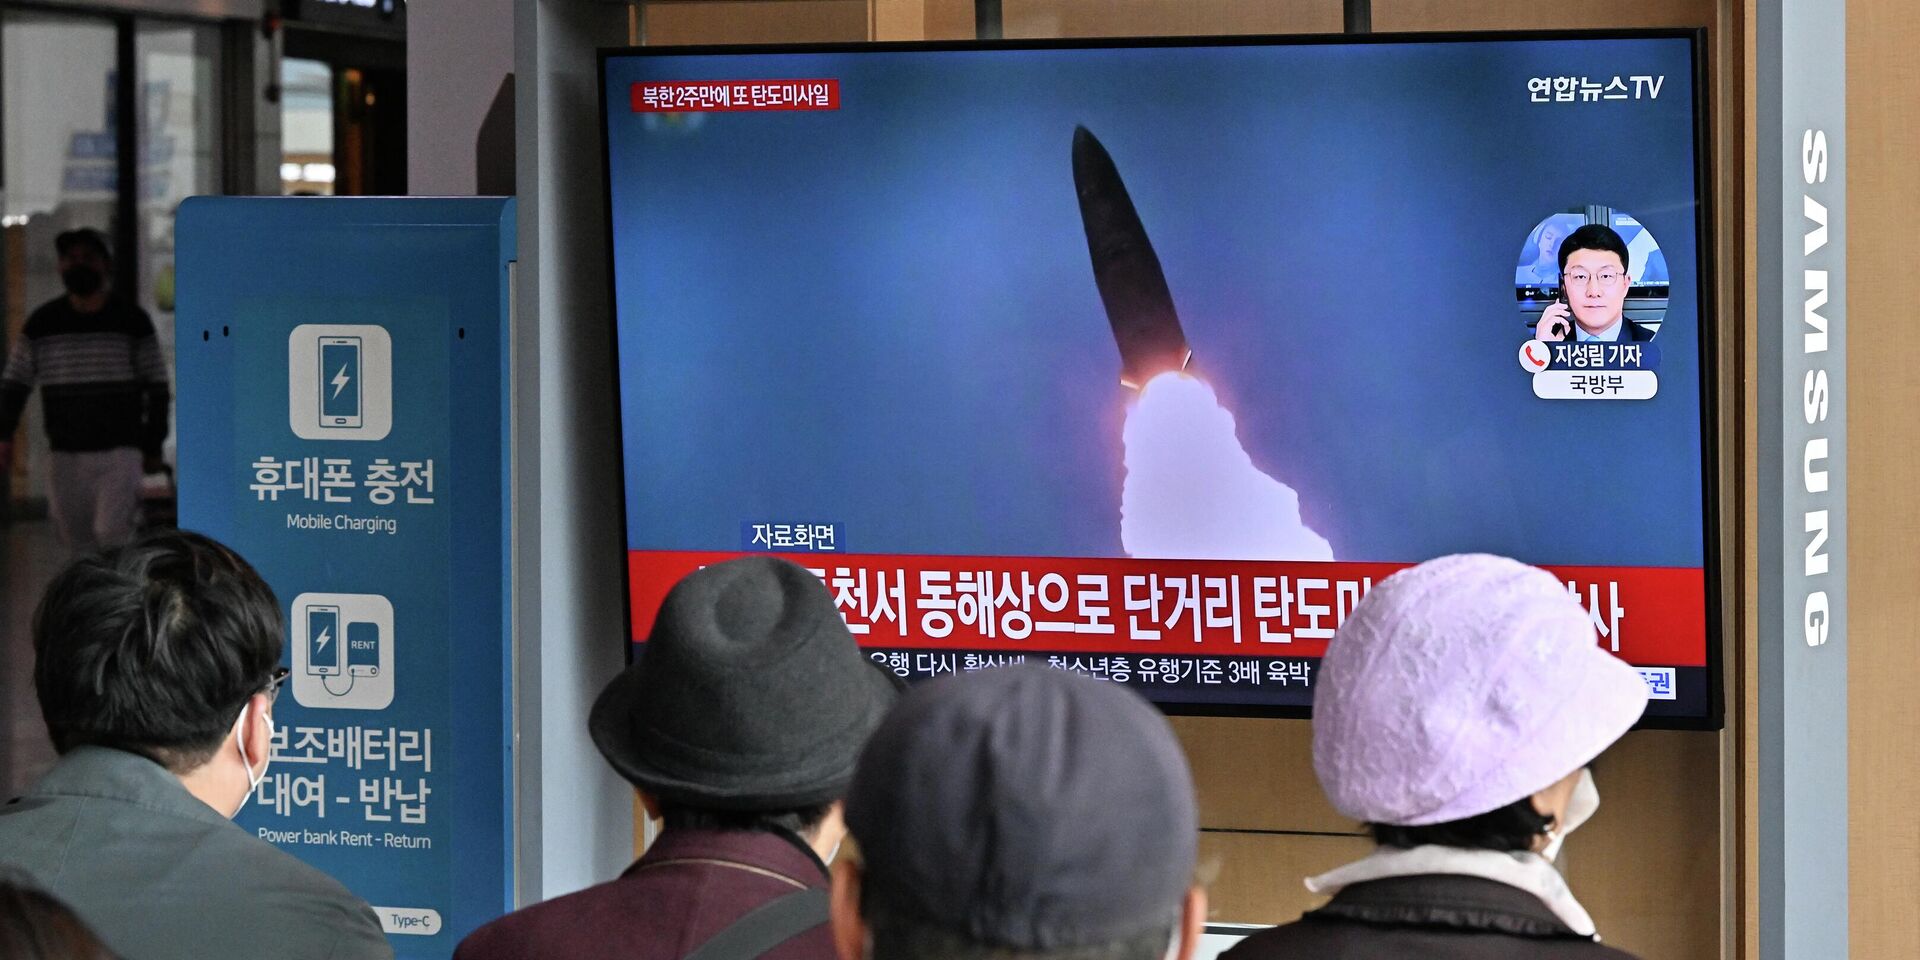 Телевизионная трансляция о запуске Северной Кореей баллистических ракет, в Сеуле, Южная Корея. 28 октября 2022 года - ИноСМИ, 1920, 28.10.2022